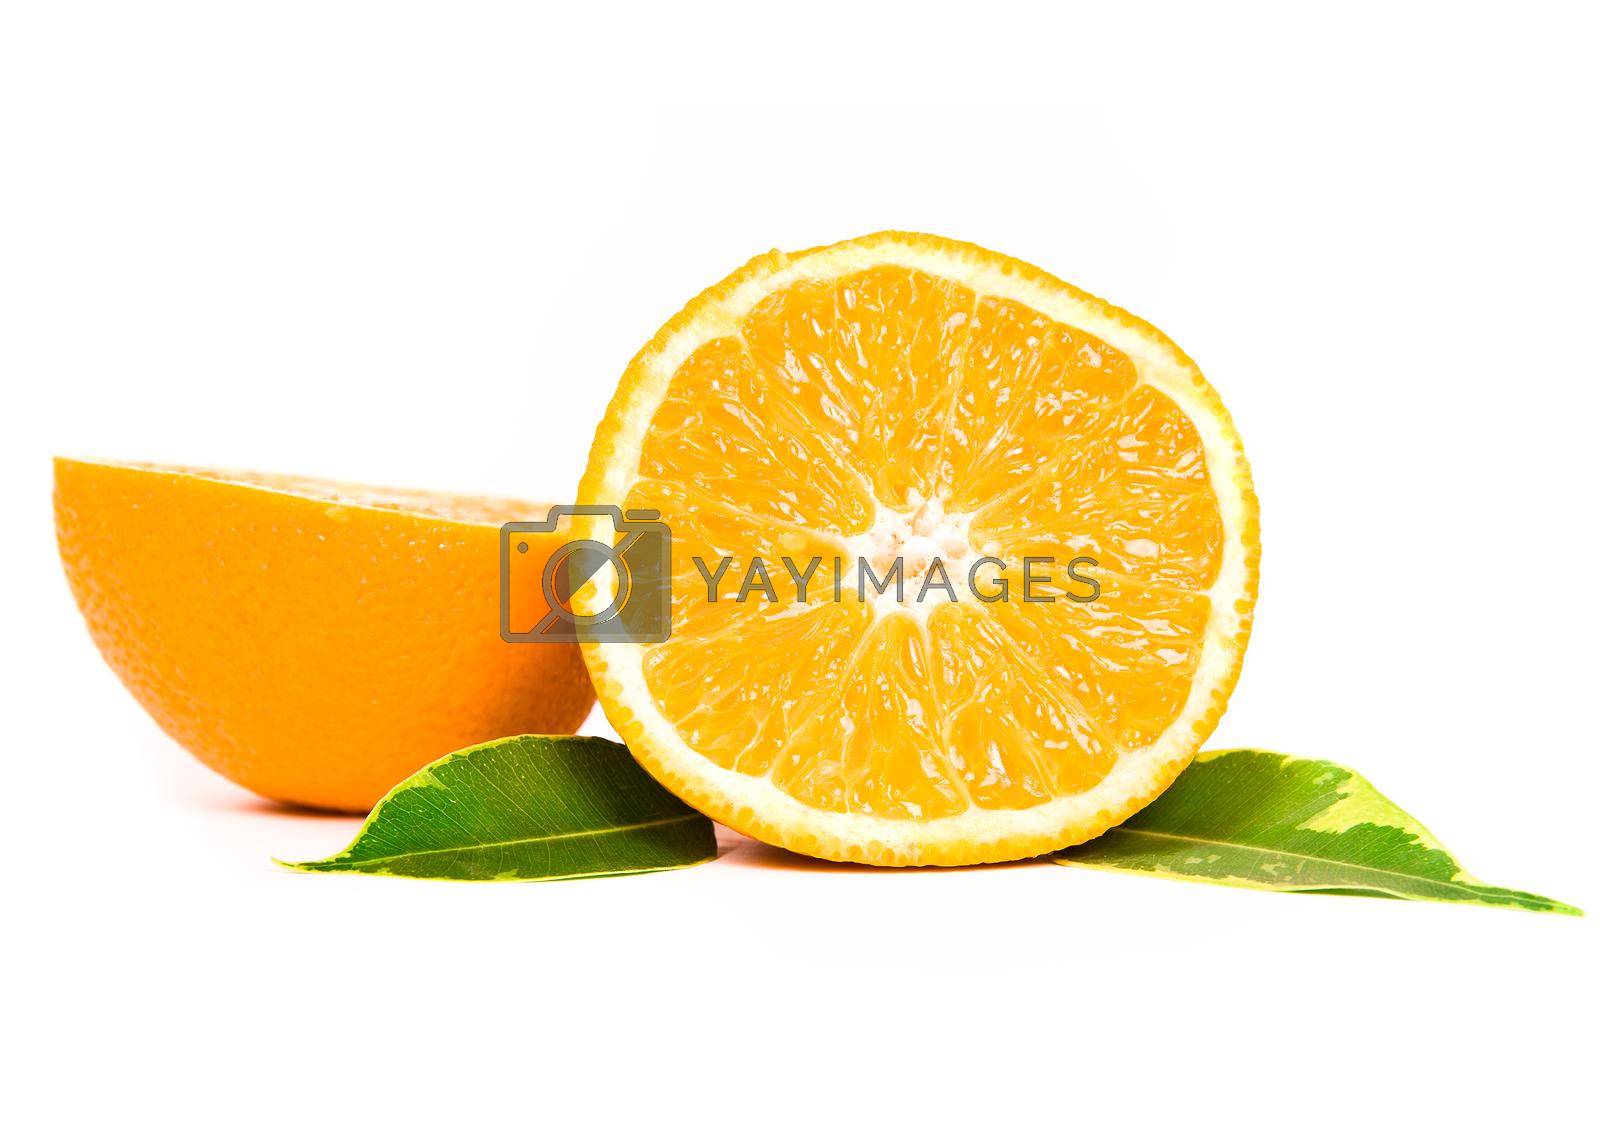 Royalty free image of orange fruit by tan4ikk1